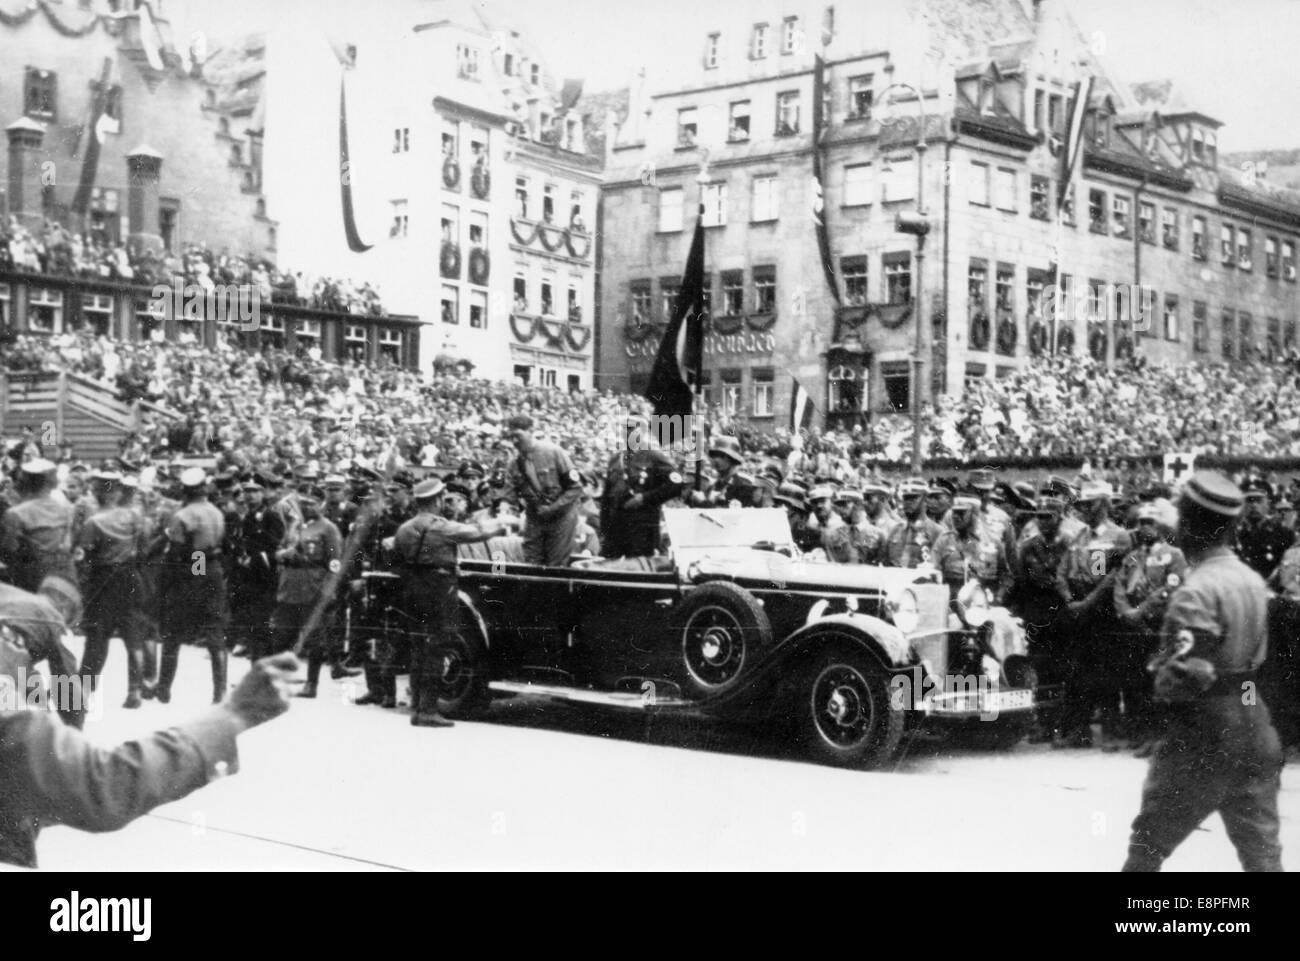 Rallye de Nuremberg 1933 à Nuremberg, Allemagne - Adolf Hitler passe en revue un défilé de sa (Sturmabteilung). (Défauts de qualité dus à la copie historique de l'image) Fotoarchiv für Zeitgeschichtee - PAS DE SERVICE DE FIL - Banque D'Images